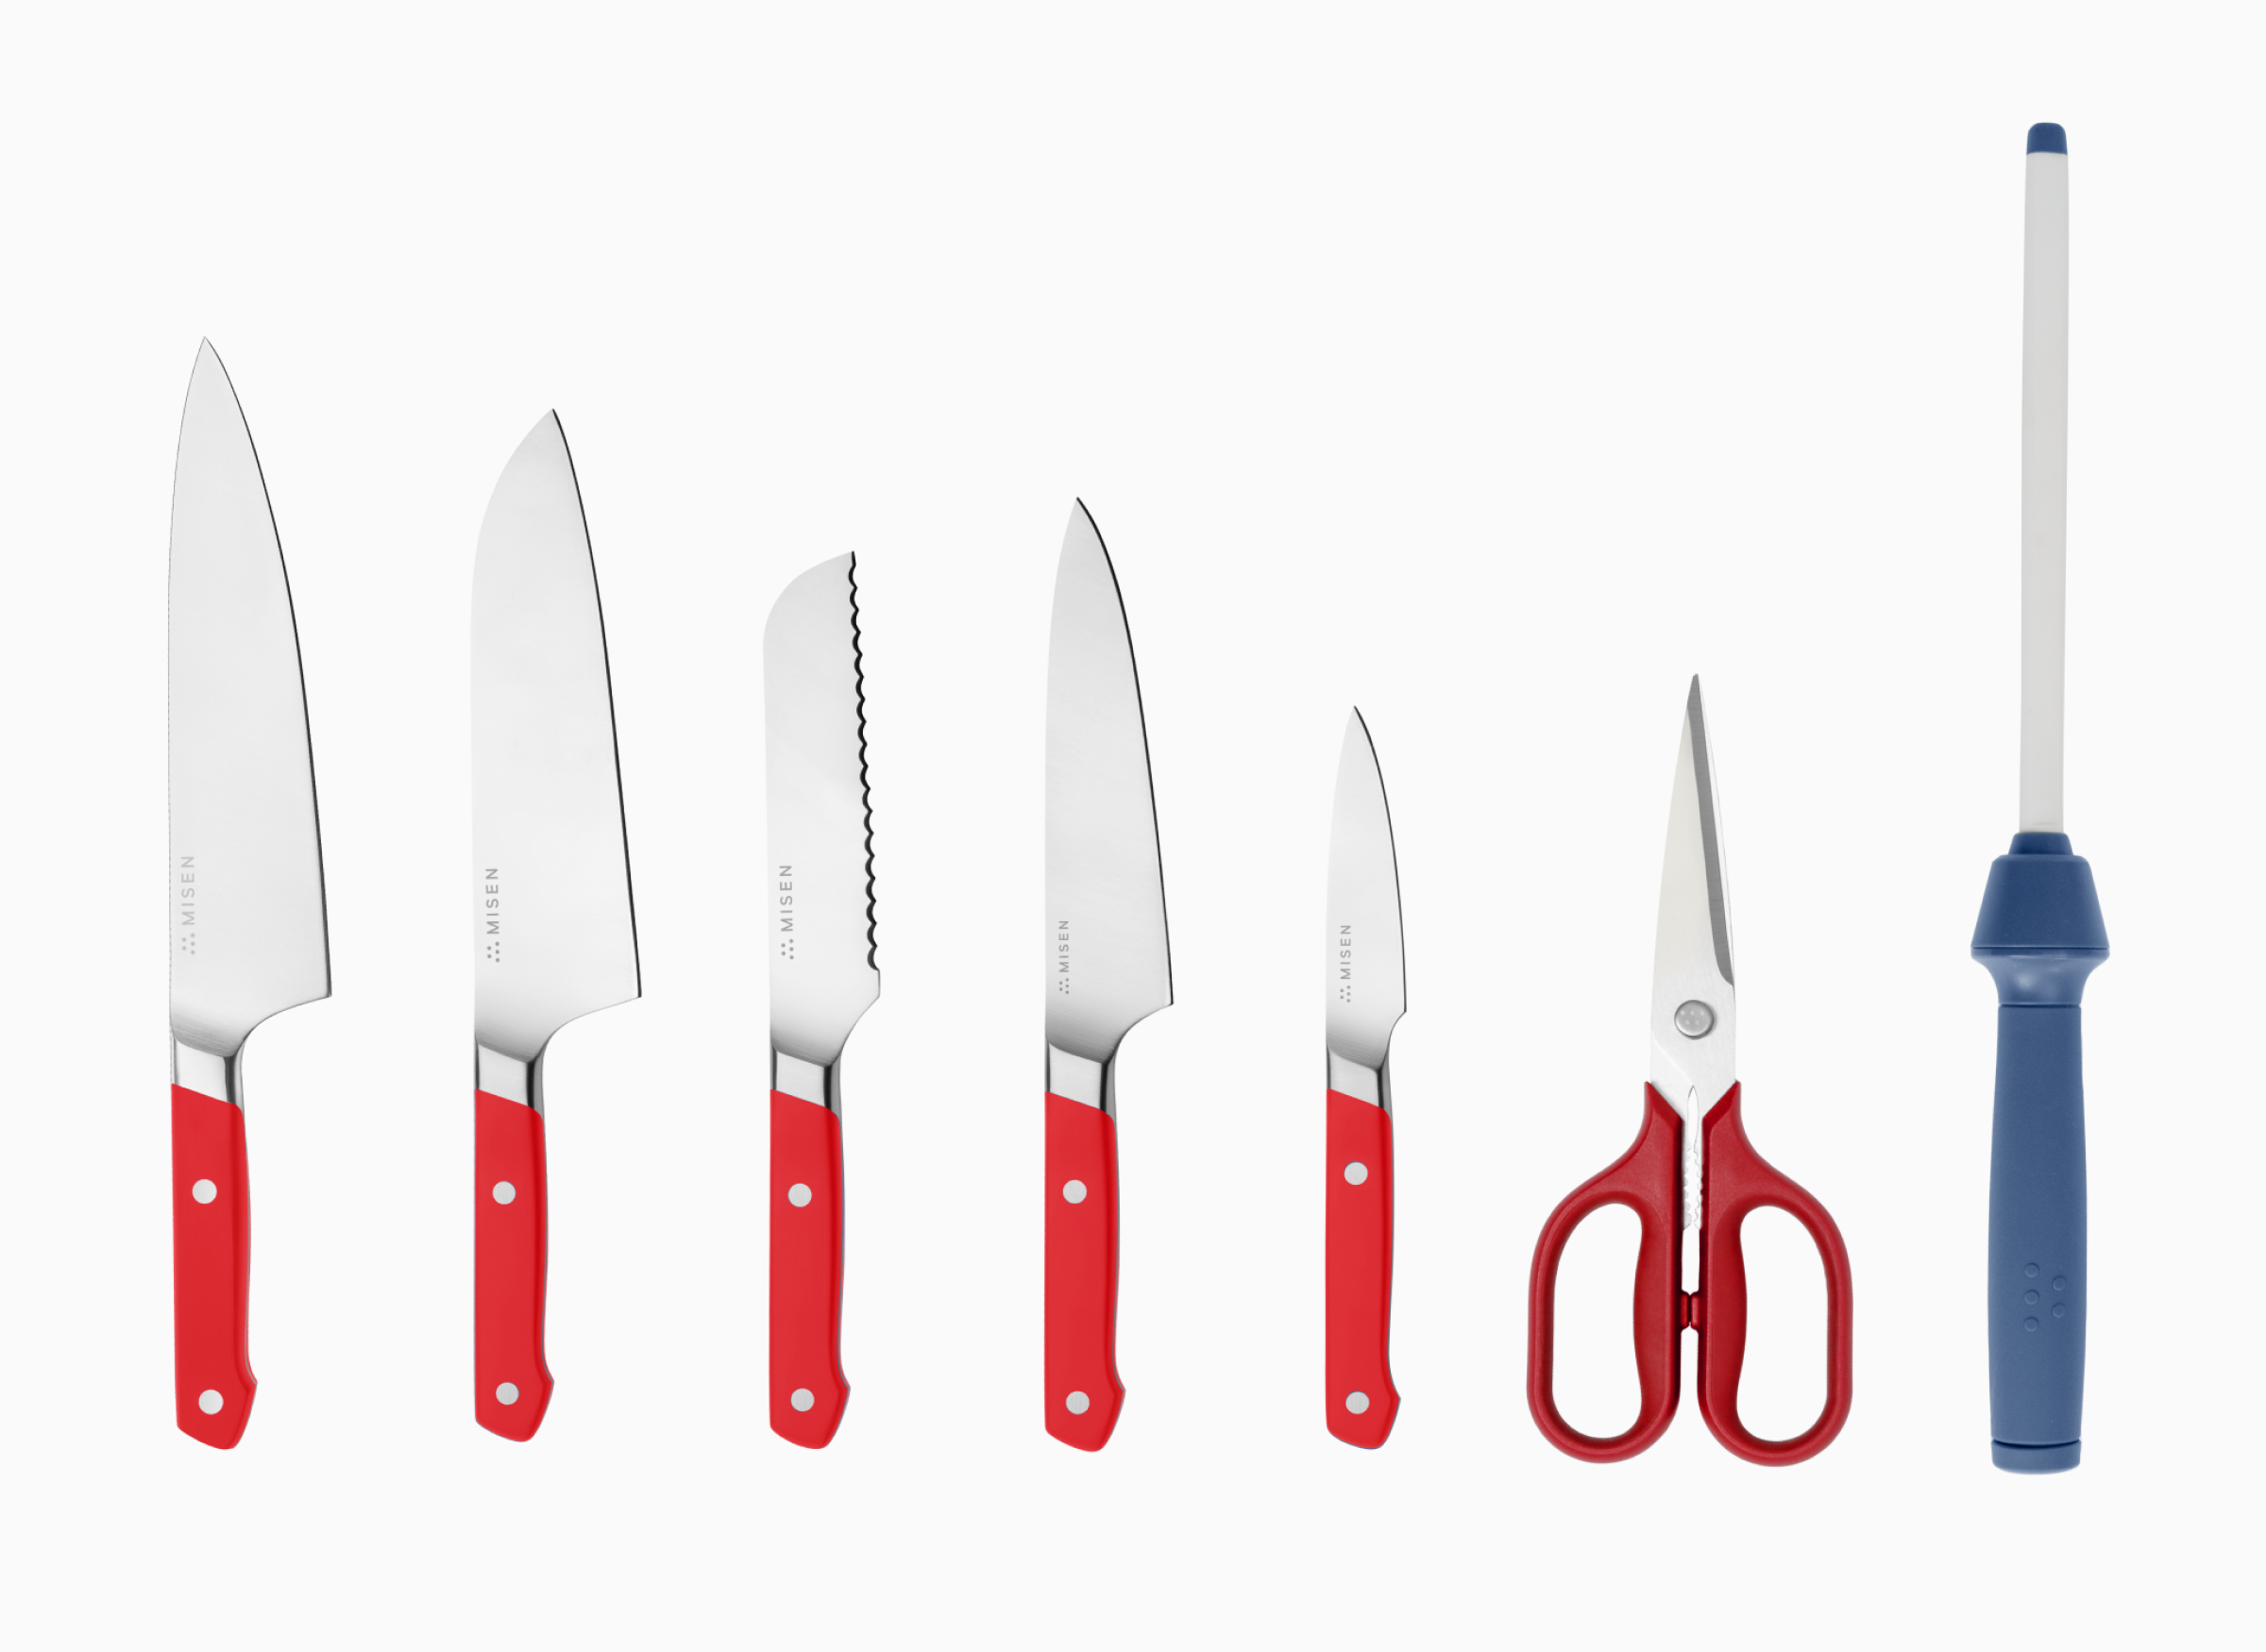 Misen Knife Set  Knife sets, Knife, Knife set kitchen